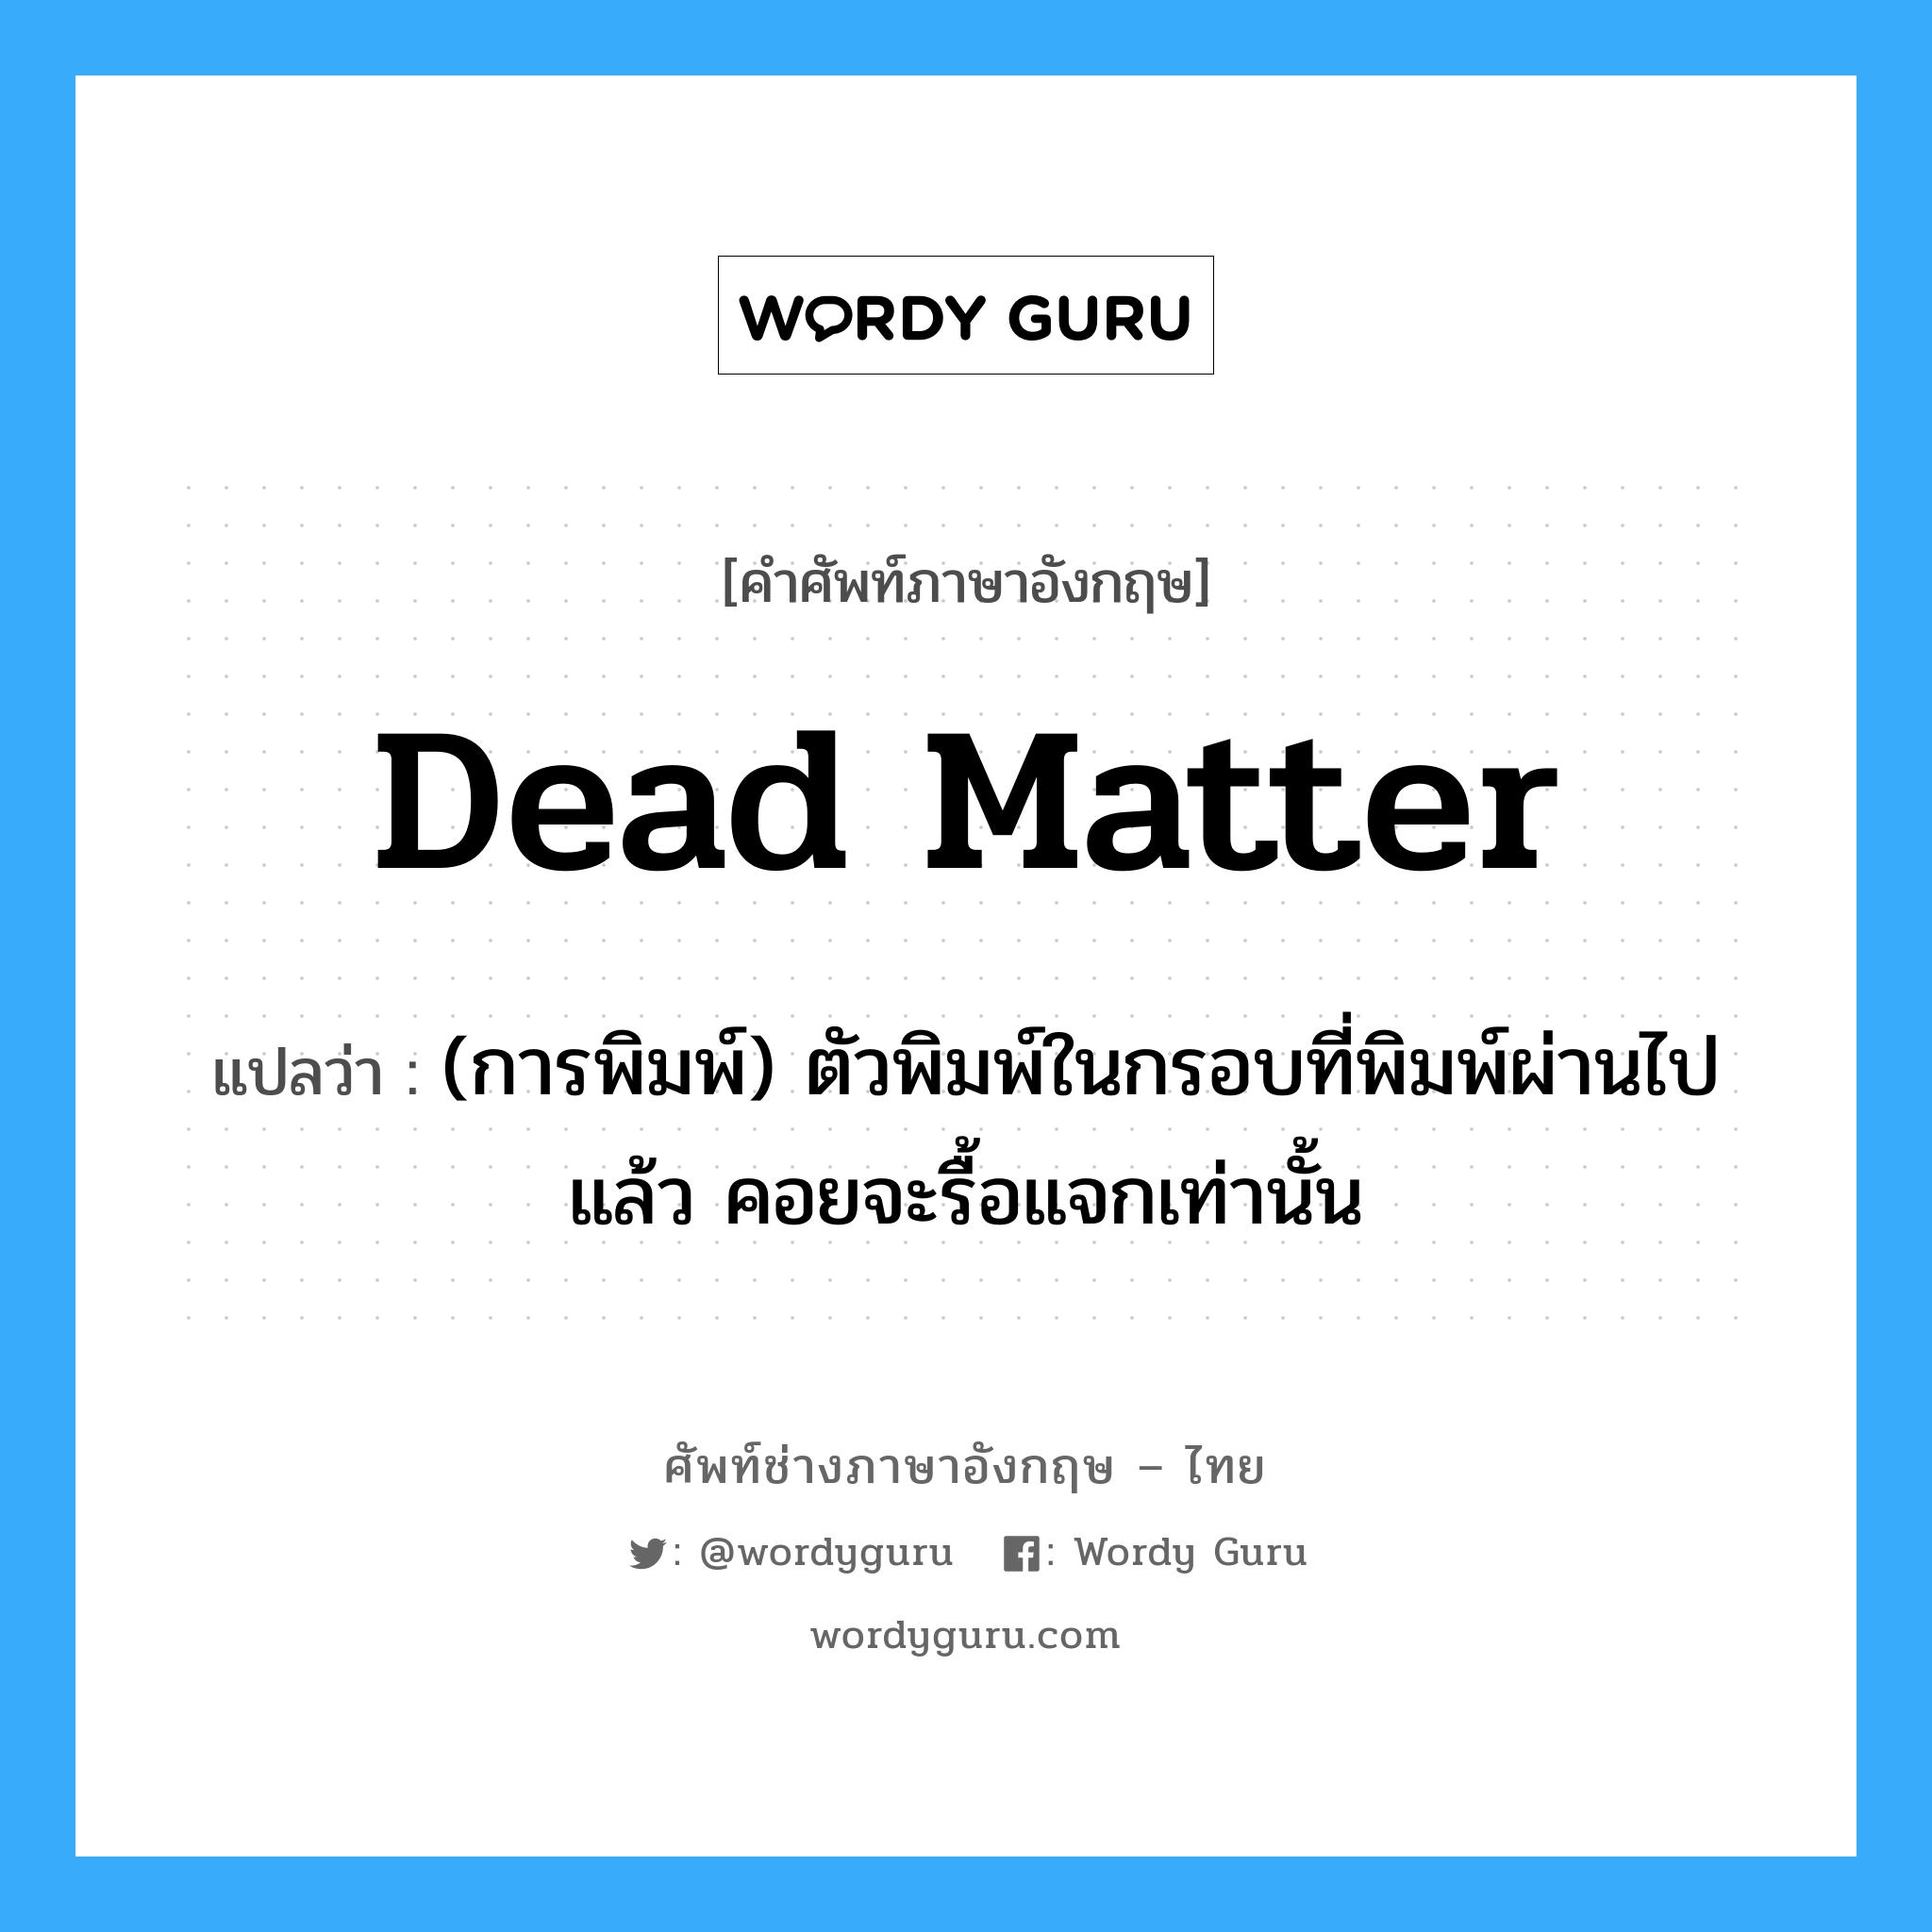 dead matter แปลว่า?, คำศัพท์ช่างภาษาอังกฤษ - ไทย dead matter คำศัพท์ภาษาอังกฤษ dead matter แปลว่า (การพิมพ์) ตัวพิมพ์ในกรอบที่พิมพ์ผ่านไปแล้ว คอยจะรื้อแจกเท่านั้น